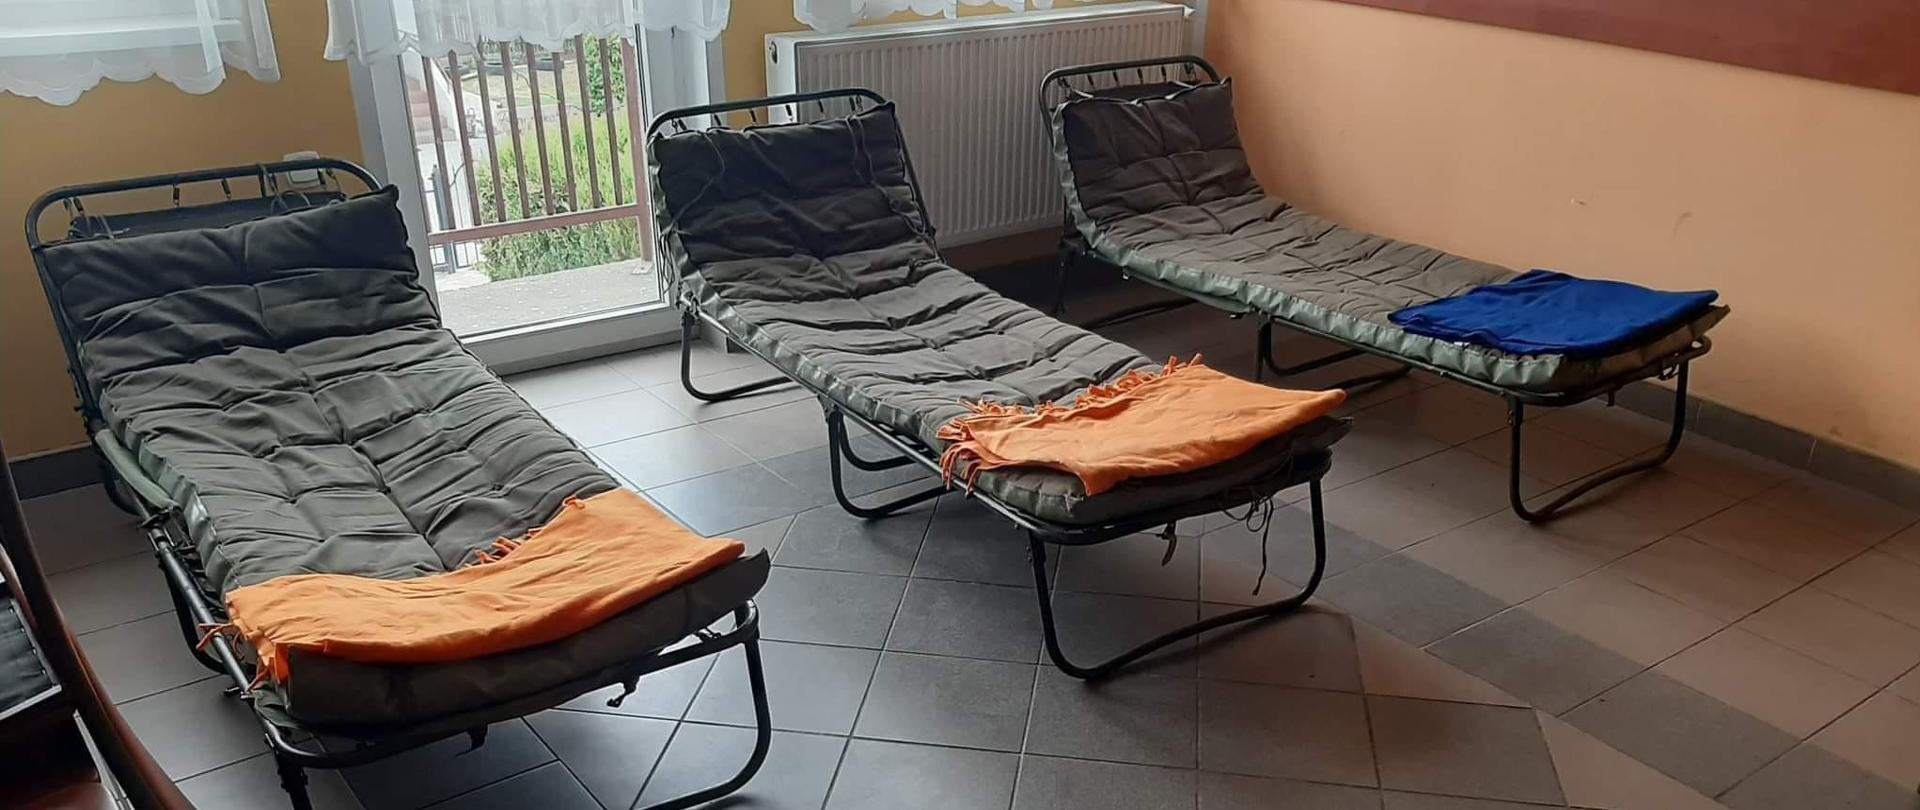 Zdjęcie przedstawia łóżka polowe w remizie OSP dla uchodźców z Ukrainy 